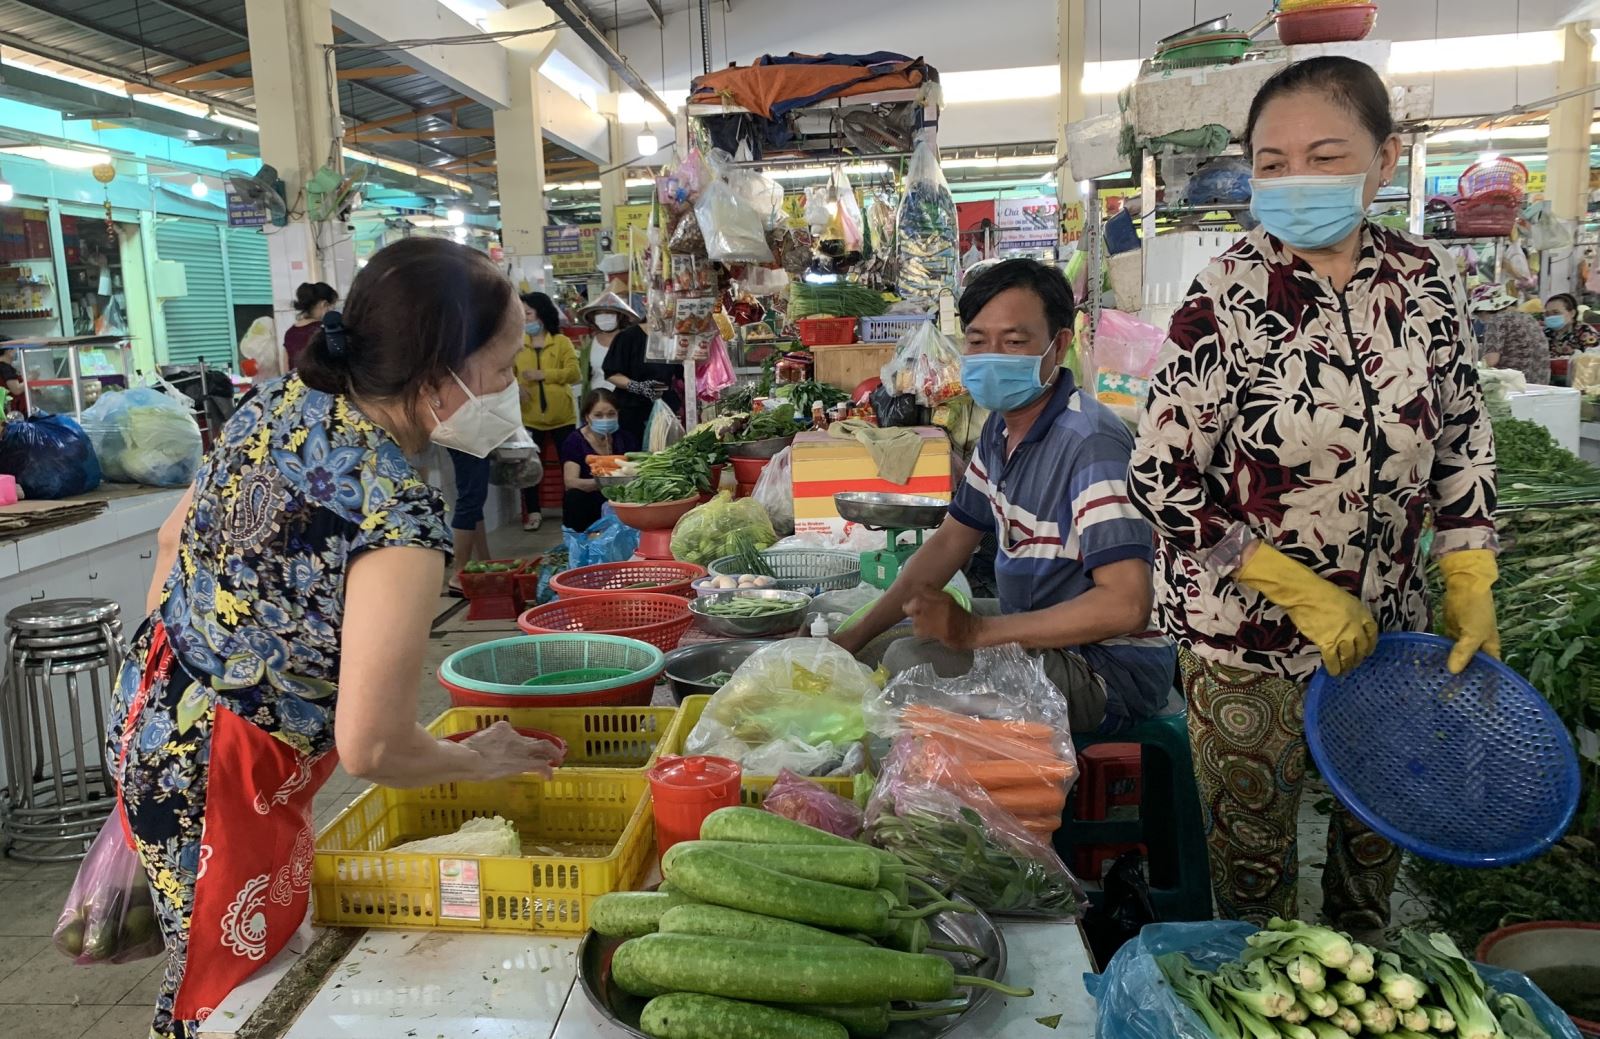 TP. Hồ Chí Minh có 33 chợ truyền thống hoạt động trong mùa dịch - Ảnh 1.